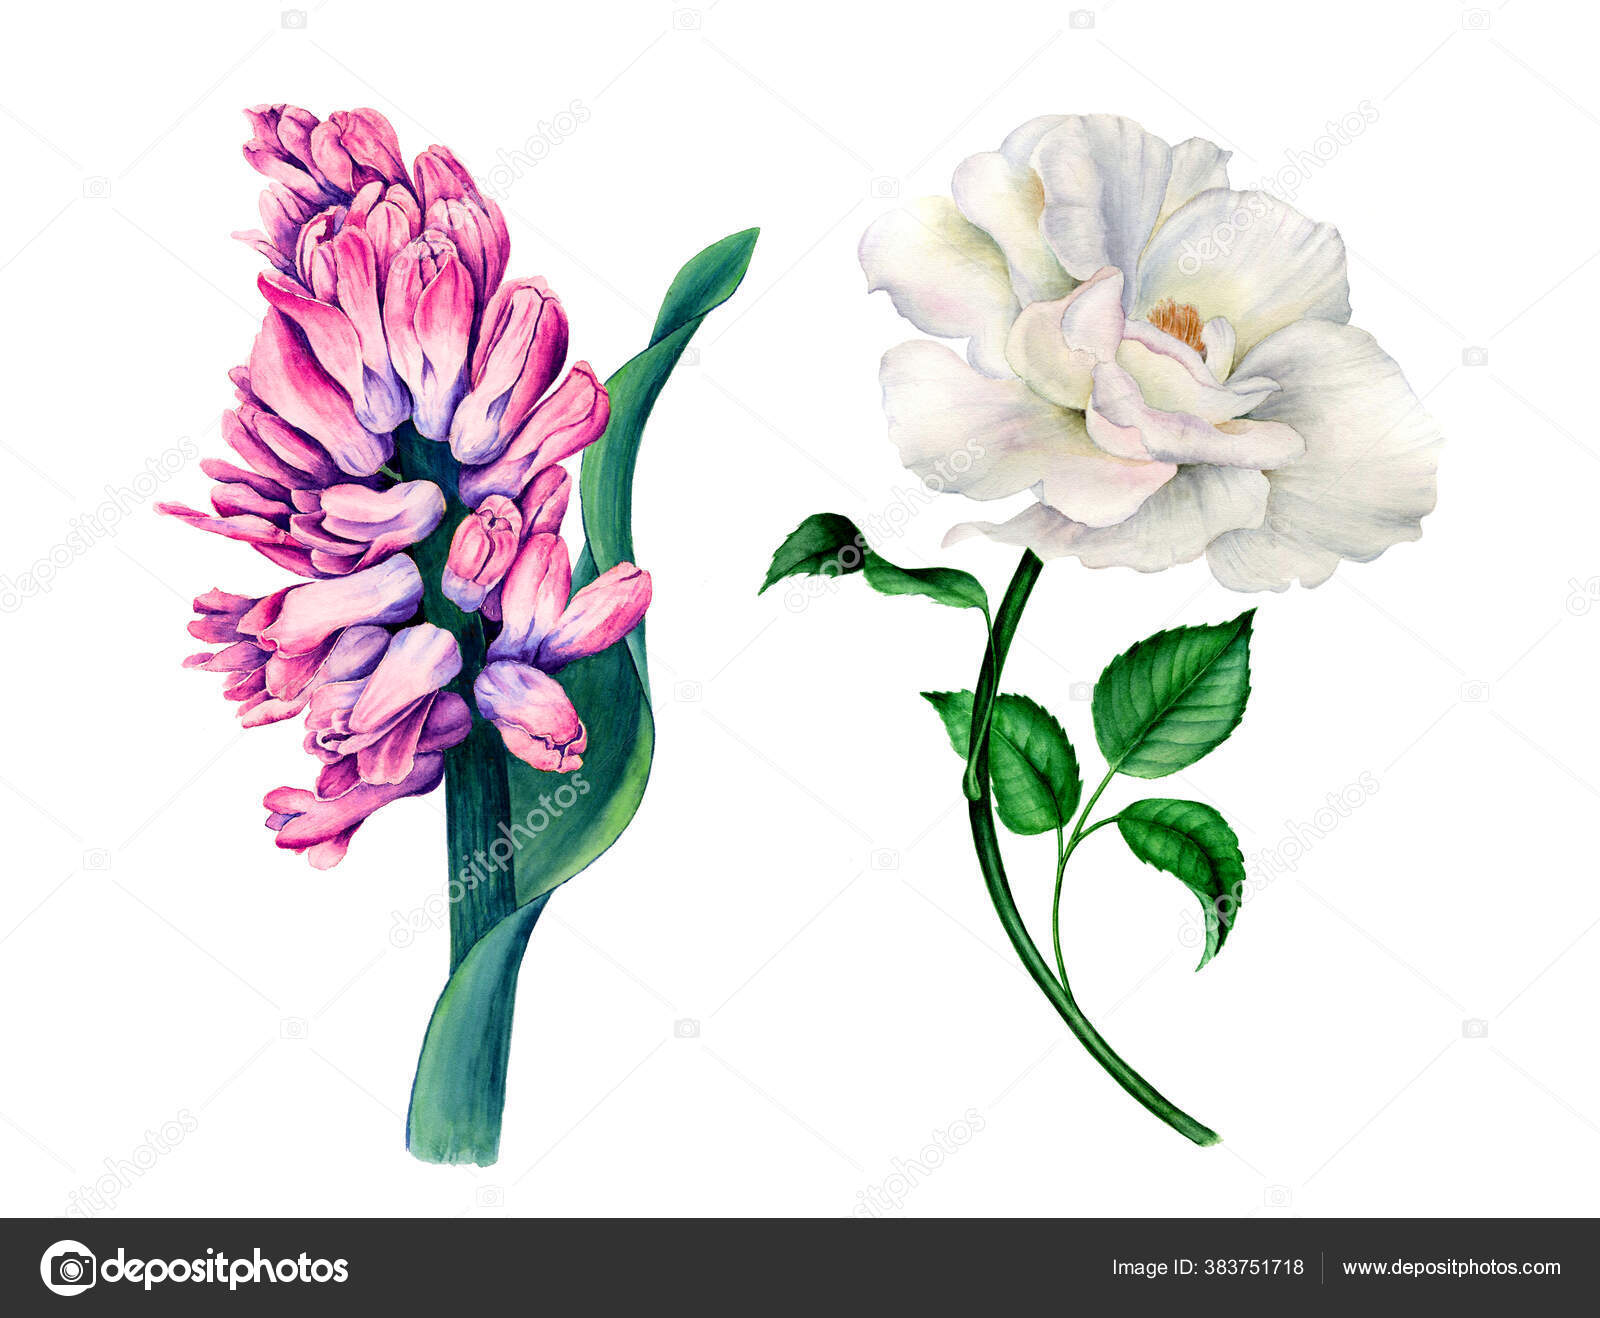 Aquarelle rose blanche images libres de droit, photos de Aquarelle rose  blanche | Depositphotos